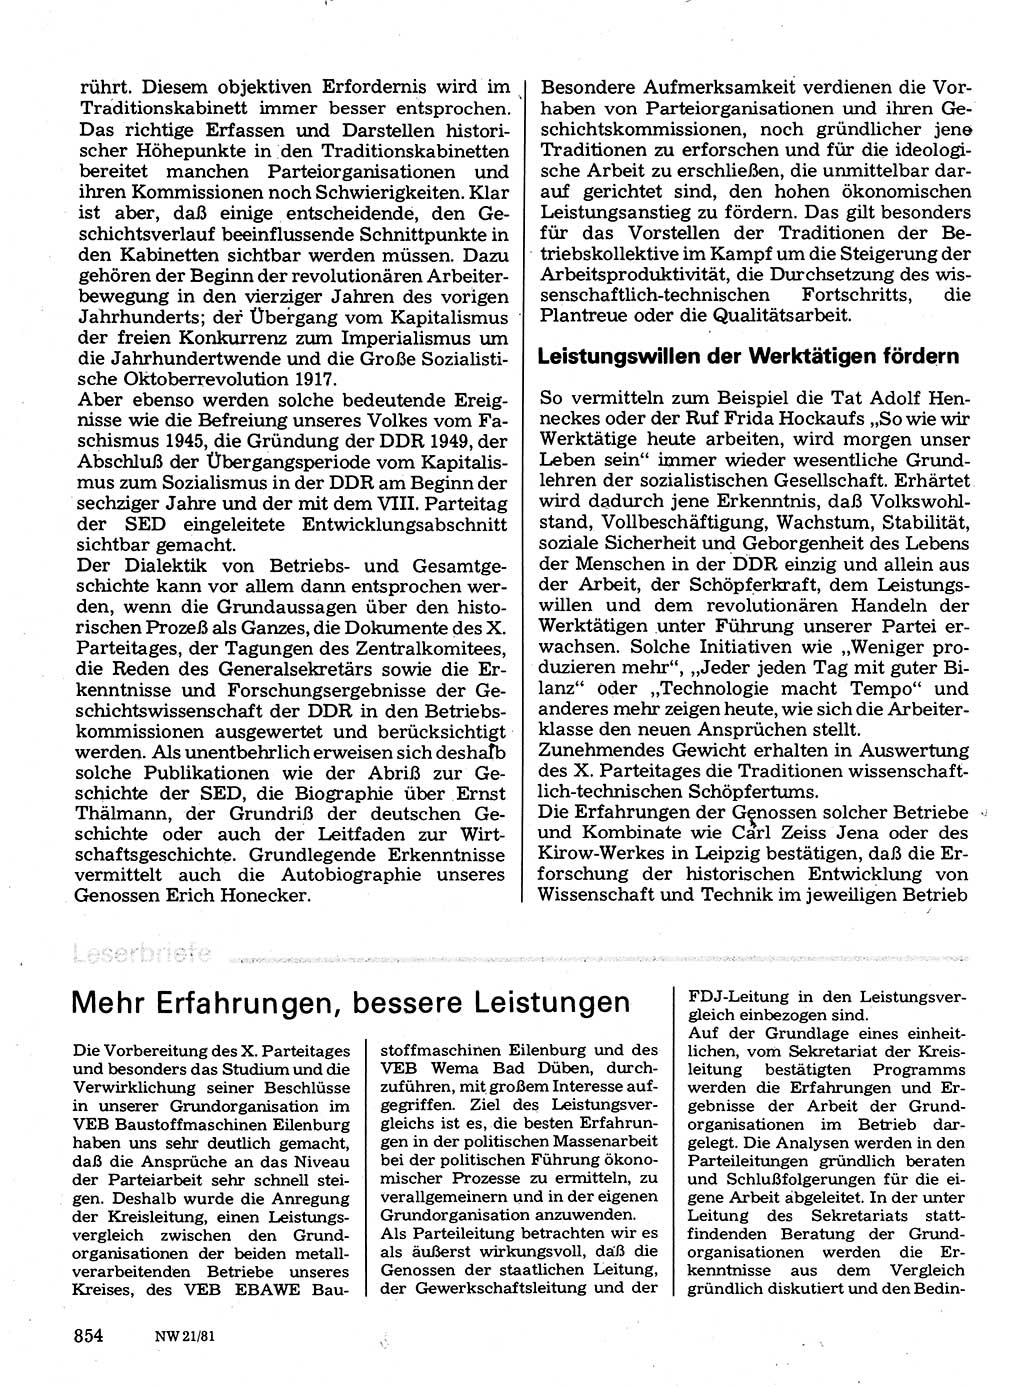 Neuer Weg (NW), Organ des Zentralkomitees (ZK) der SED (Sozialistische Einheitspartei Deutschlands) für Fragen des Parteilebens, 36. Jahrgang [Deutsche Demokratische Republik (DDR)] 1981, Seite 854 (NW ZK SED DDR 1981, S. 854)